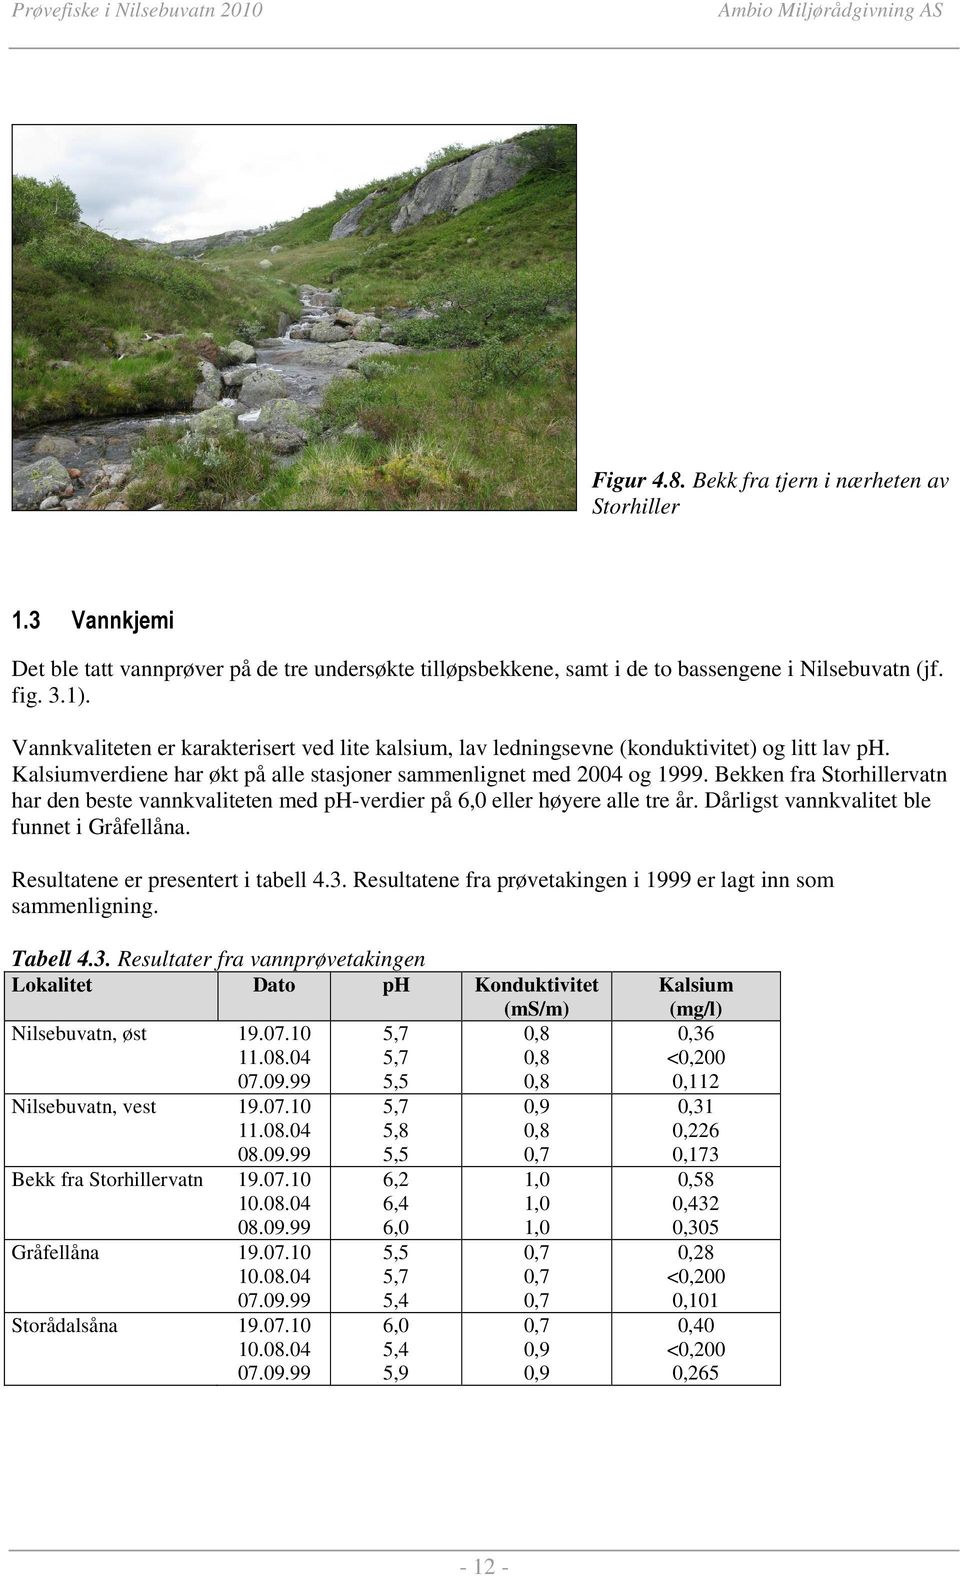 Bekken fra Storhillervatn har den beste vannkvaliteten med ph-verdier på 6,0 eller høyere alle tre år. Dårligst vannkvalitet ble funnet i Gråfellåna. Resultatene er presentert i tabell 4.3.